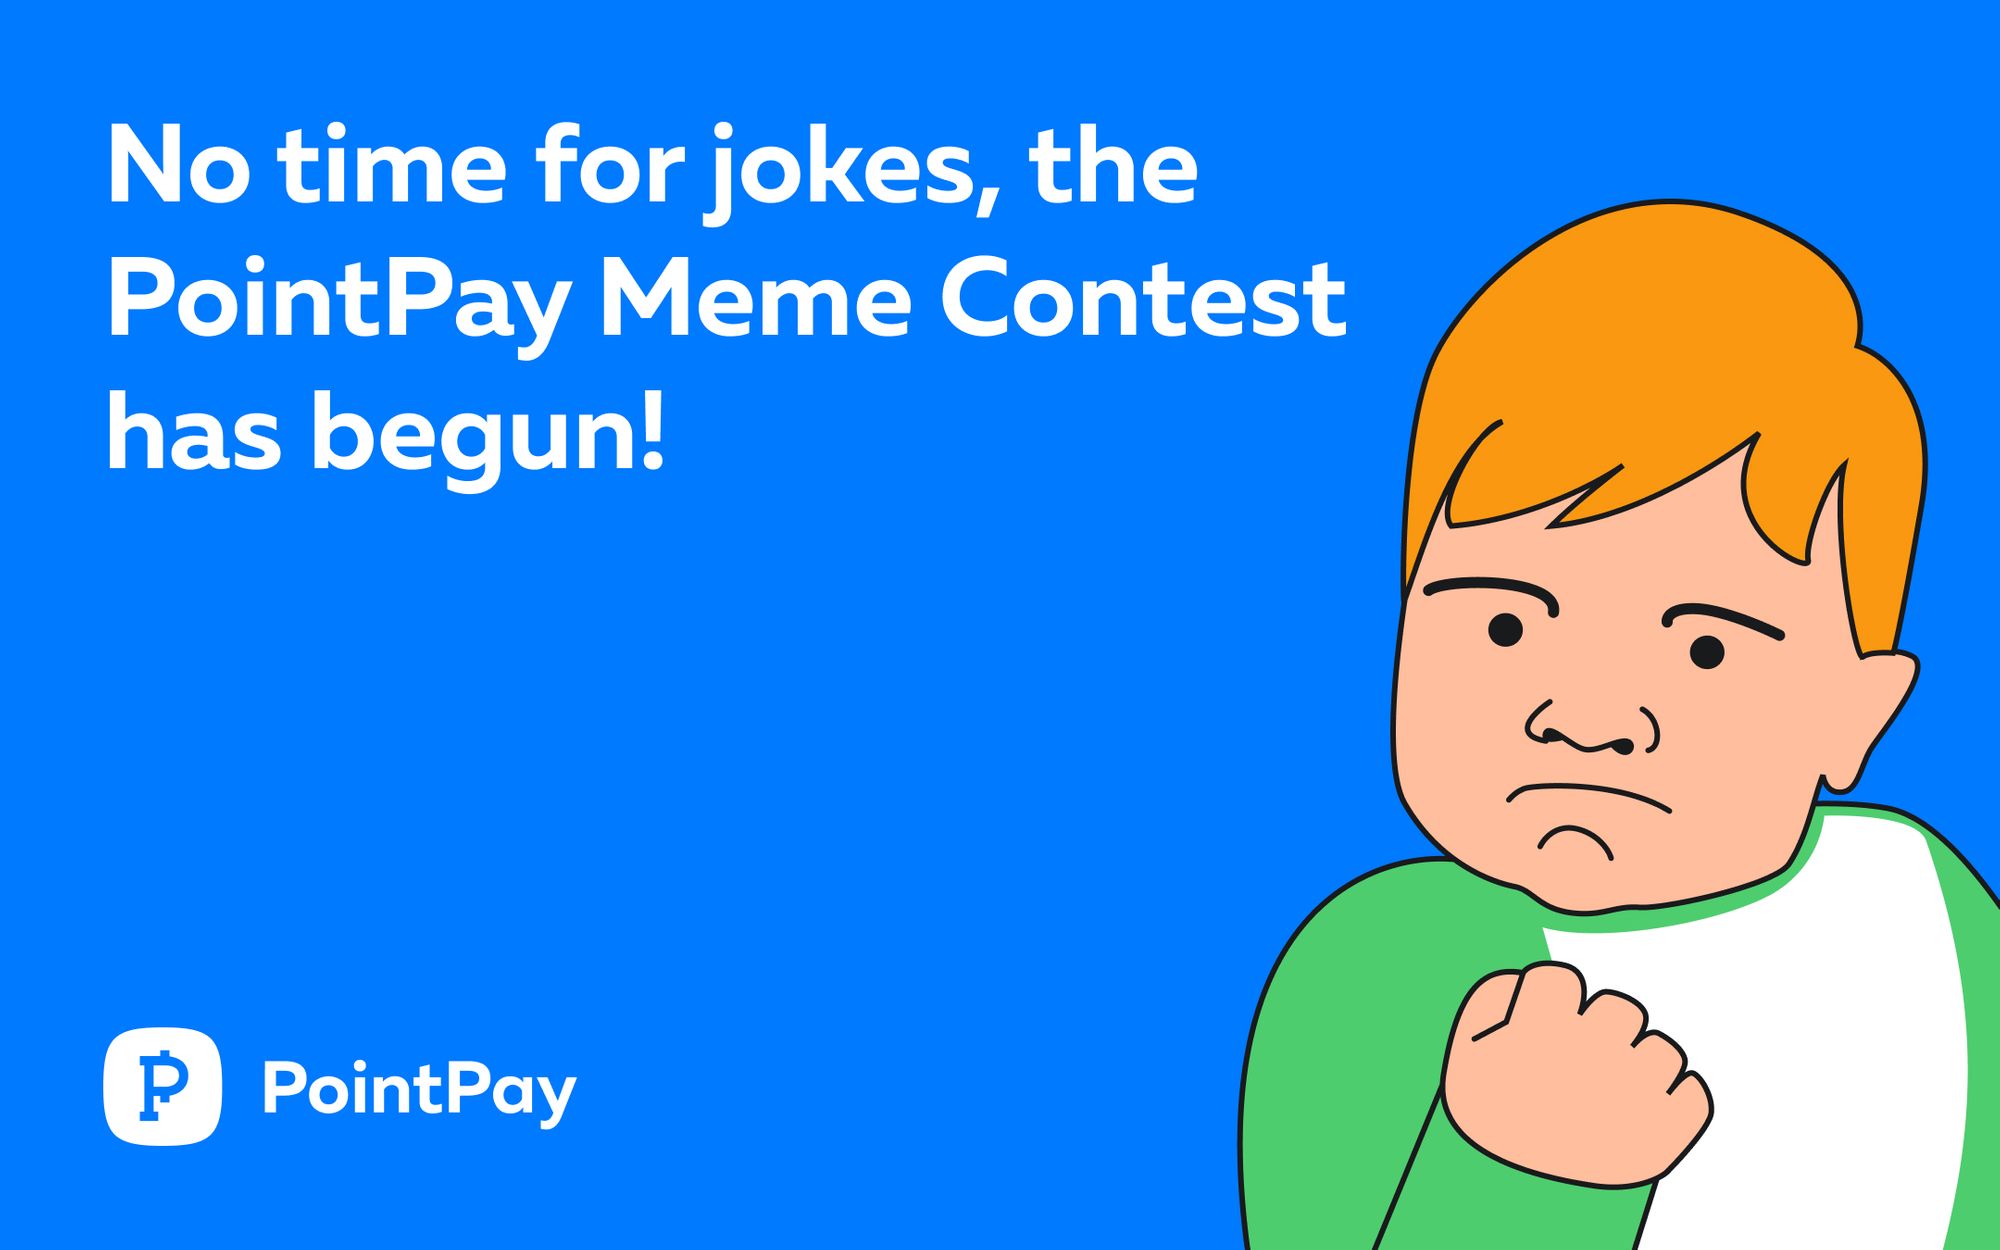 Announcing the PointPay Meme Contest!